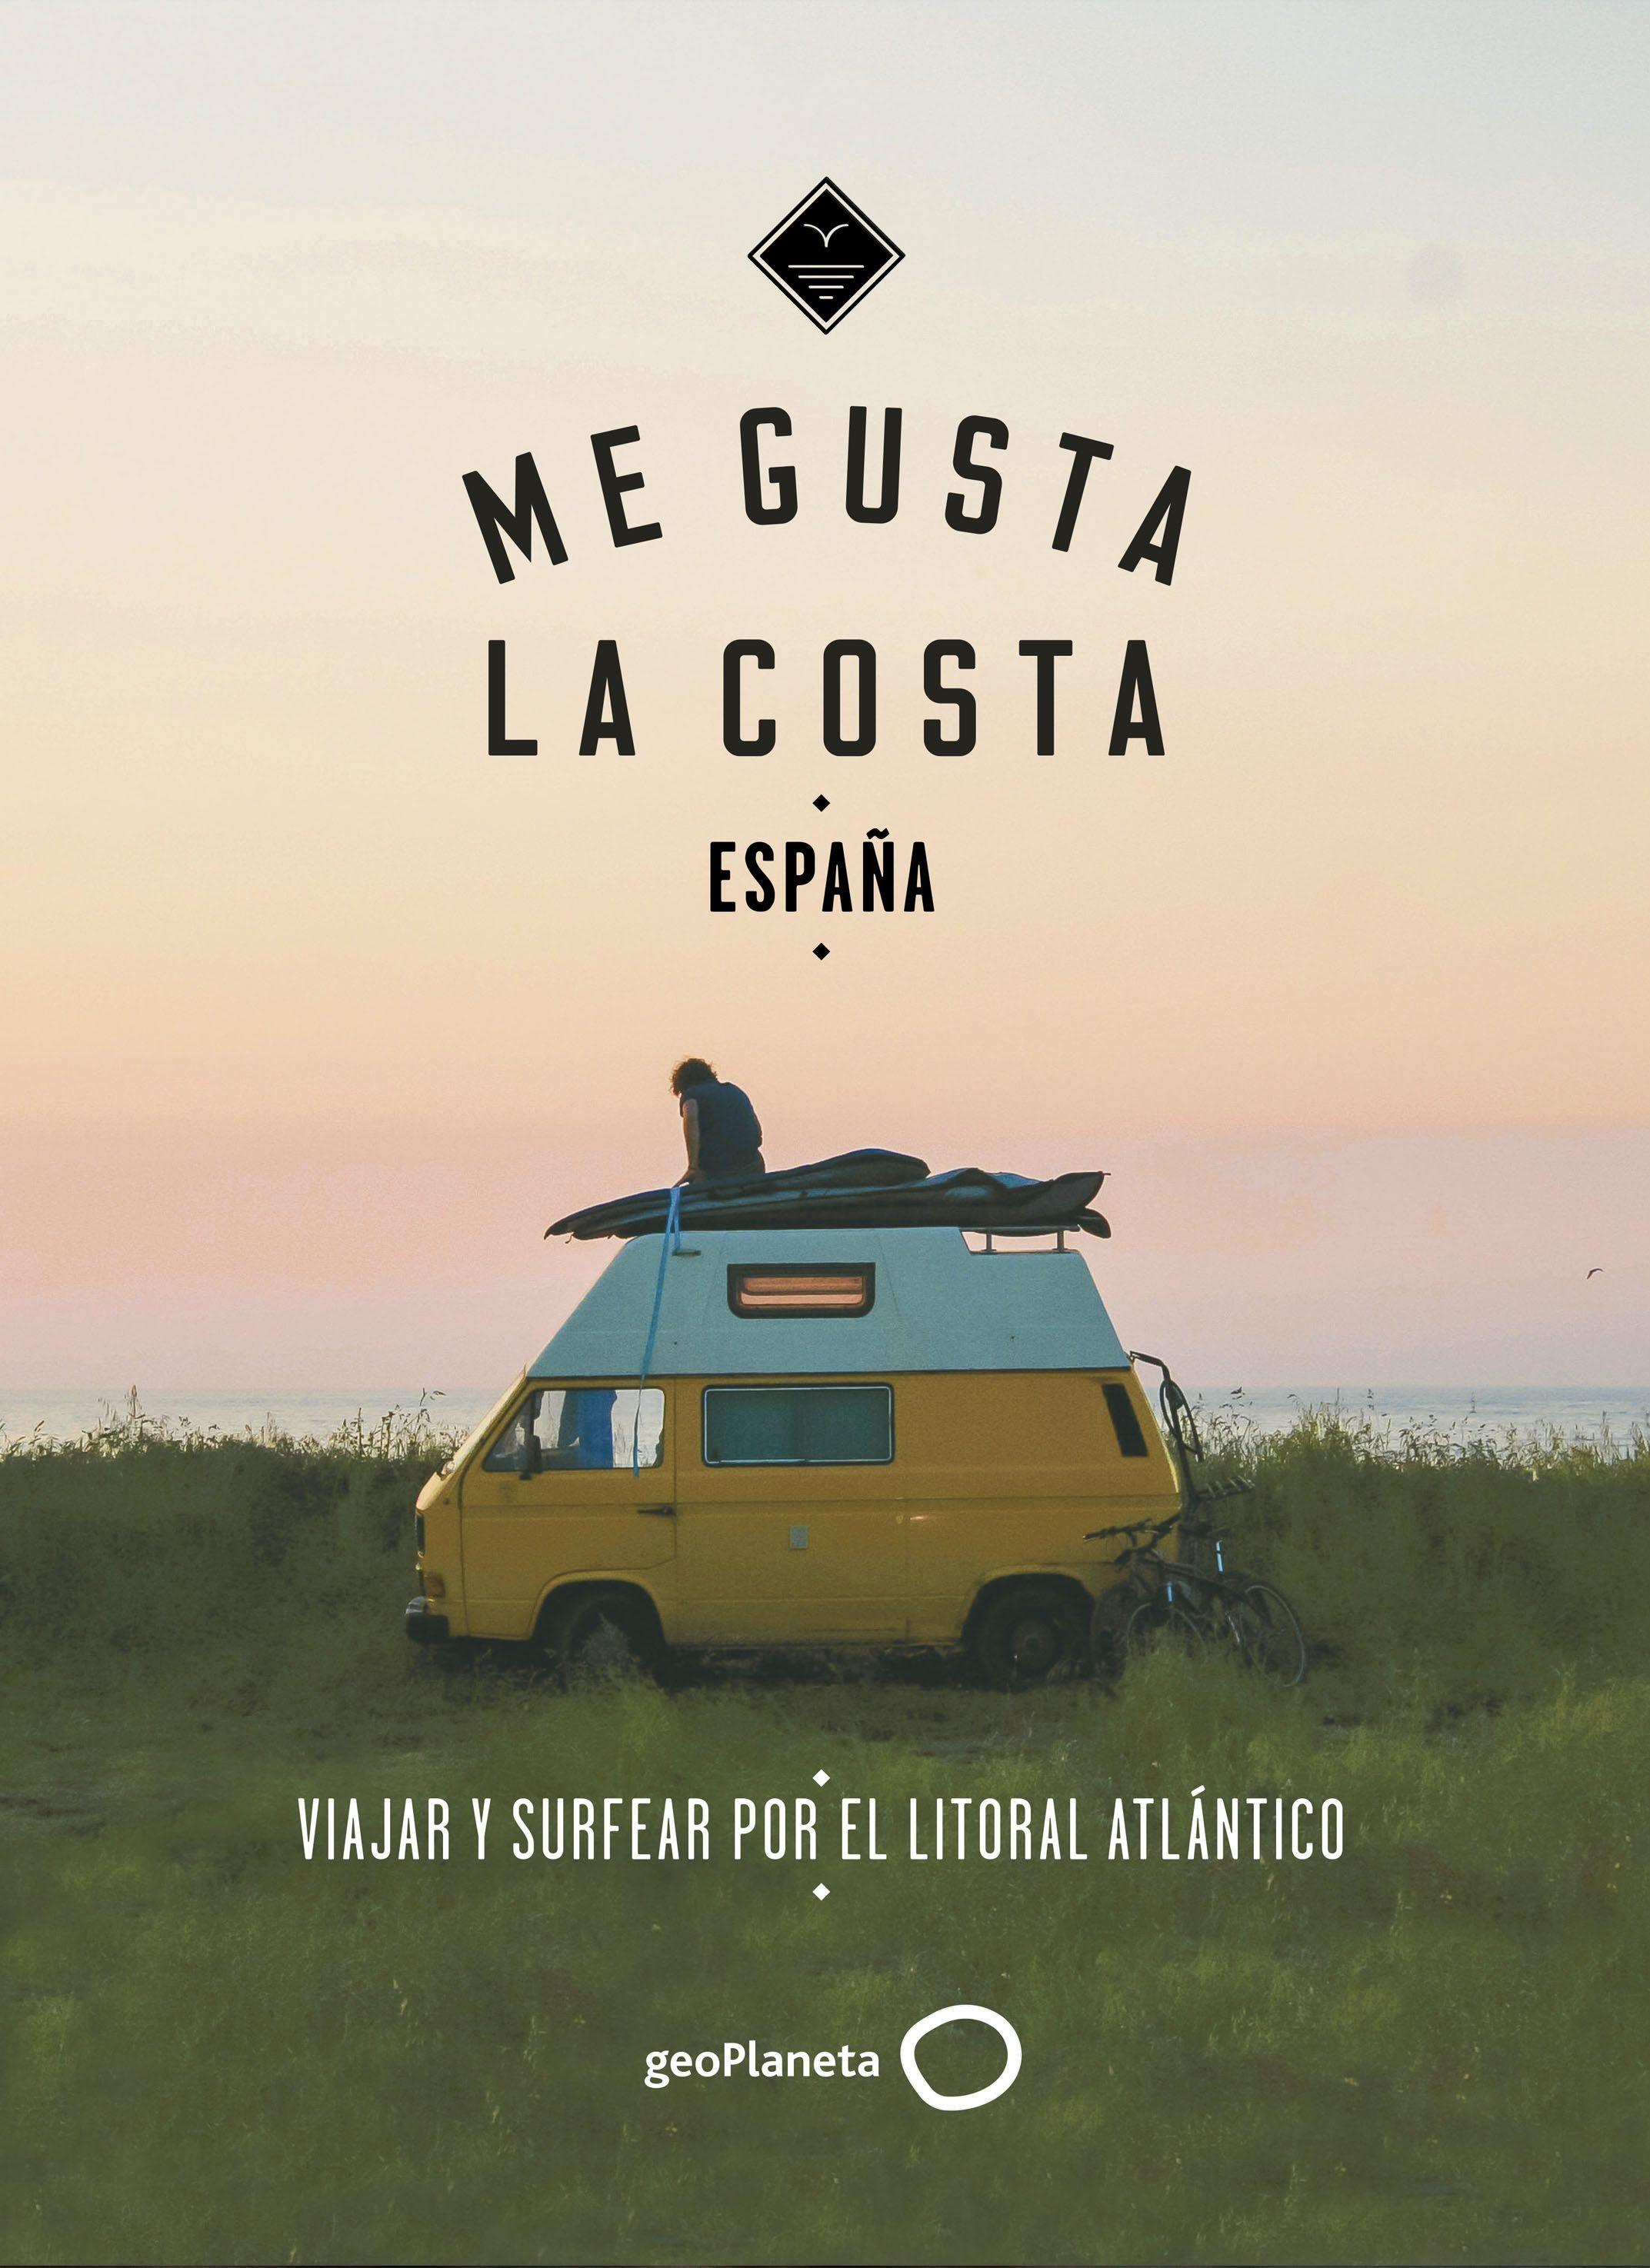 Me gusta la costa en España "Viajar y surfear por el litoral atlántico"